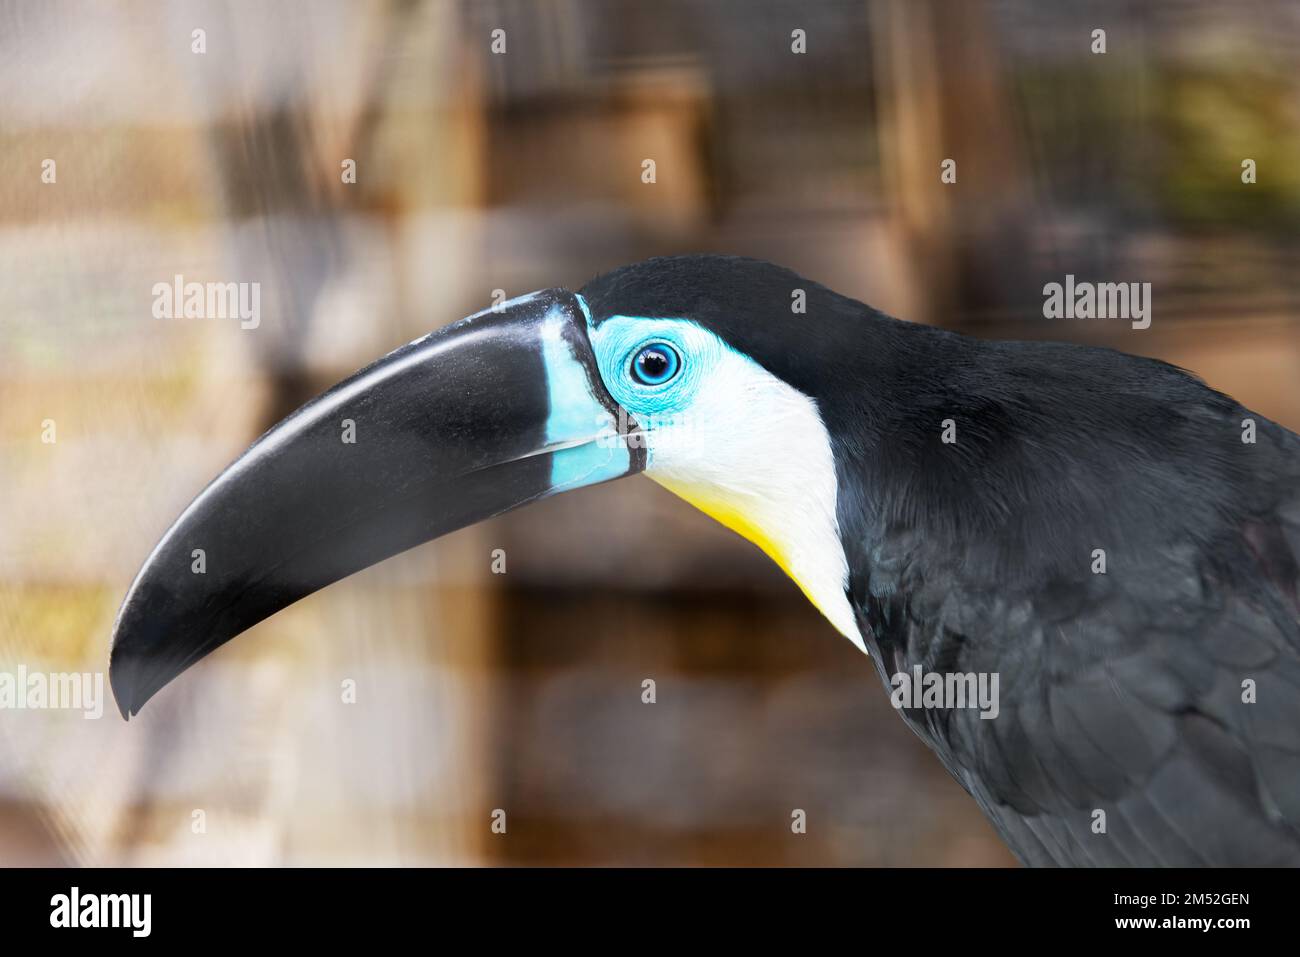 Toukanischer Vogel im Zoo vom Aussterben bedrohter tropischer Vogel bunter schwarzer Schnabel Stockfoto